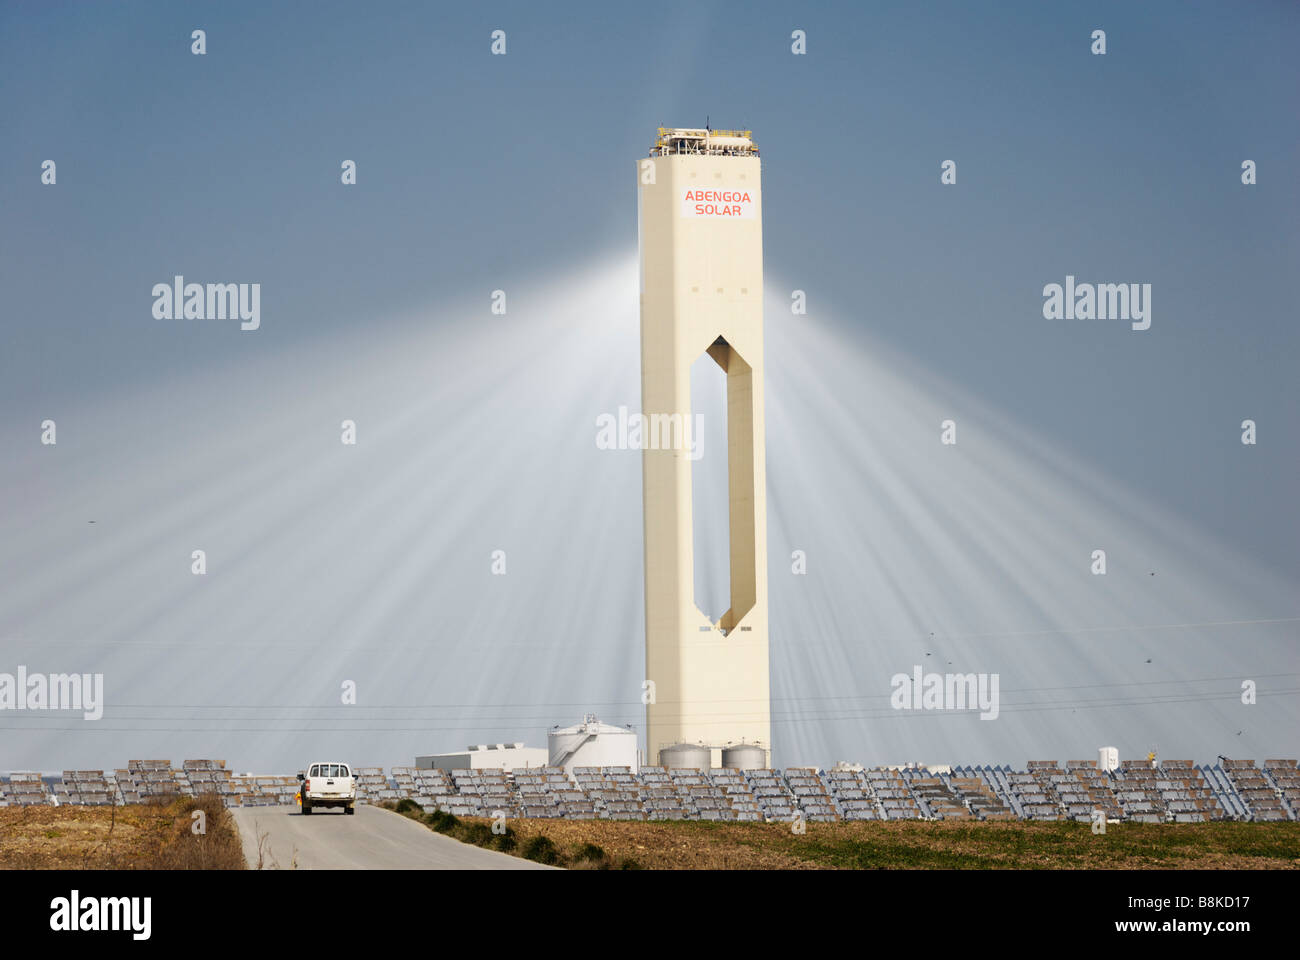 Das Solarturmkraftwerk PS10 produziert saubere thermoelektrische Strom aus der Sonne - Abengoa Solúcar Plattform in Andalusien Spanien Stockfoto